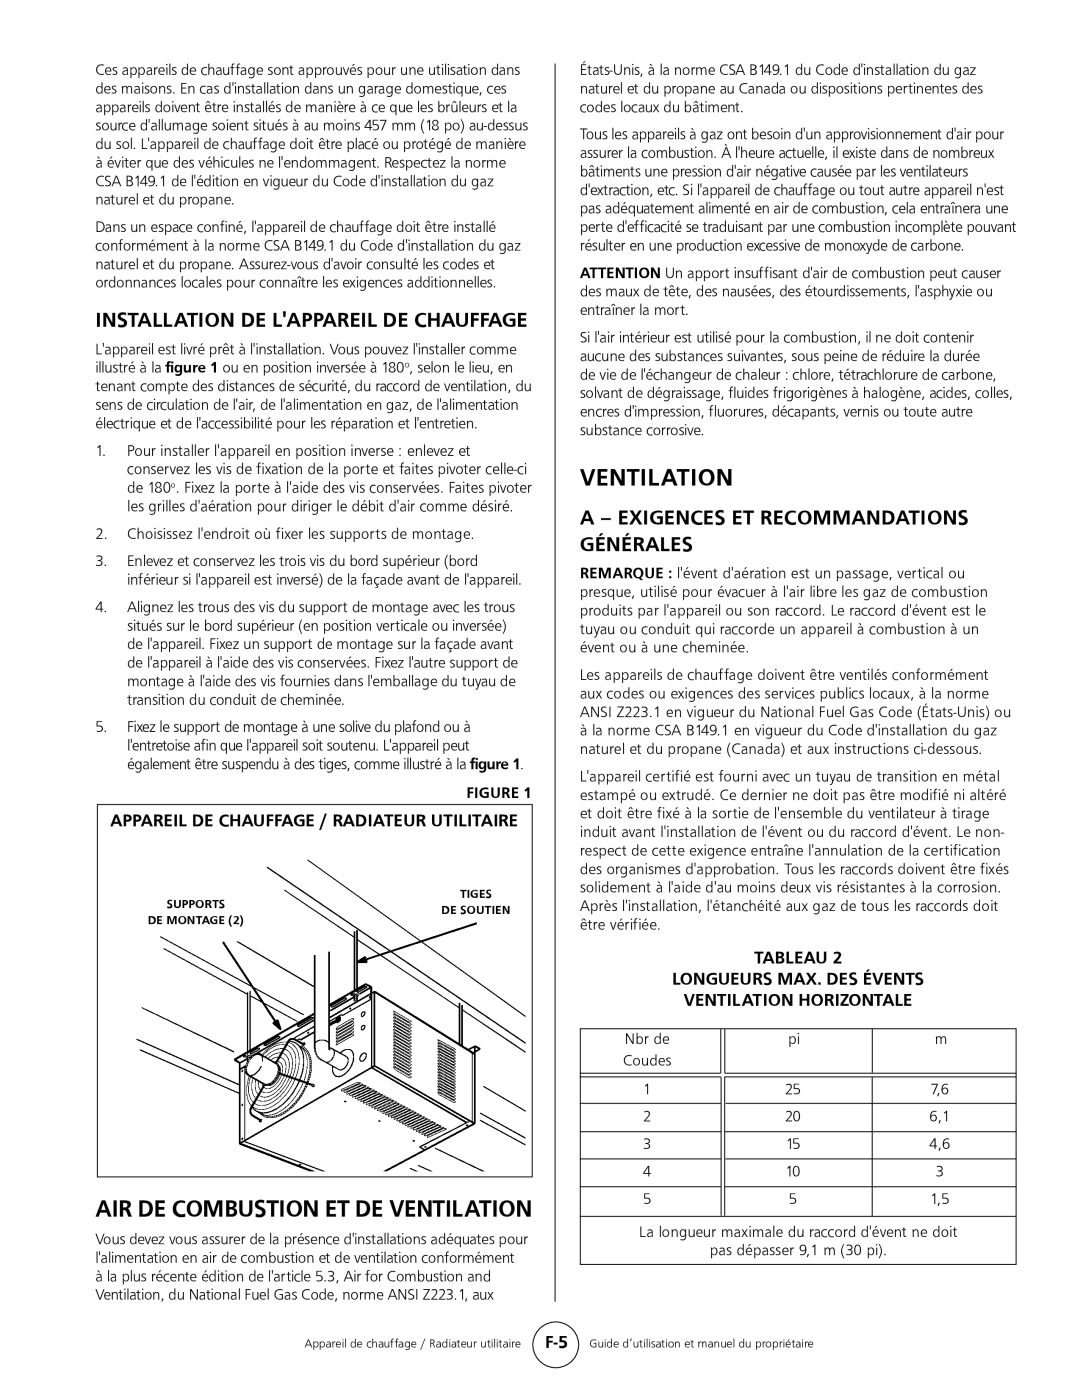 Mr. Heater MHU 80 Ventilation, A - Exigences Et Recommandations Générales, Appareil De Chauffage / Radiateur Utilitaire 